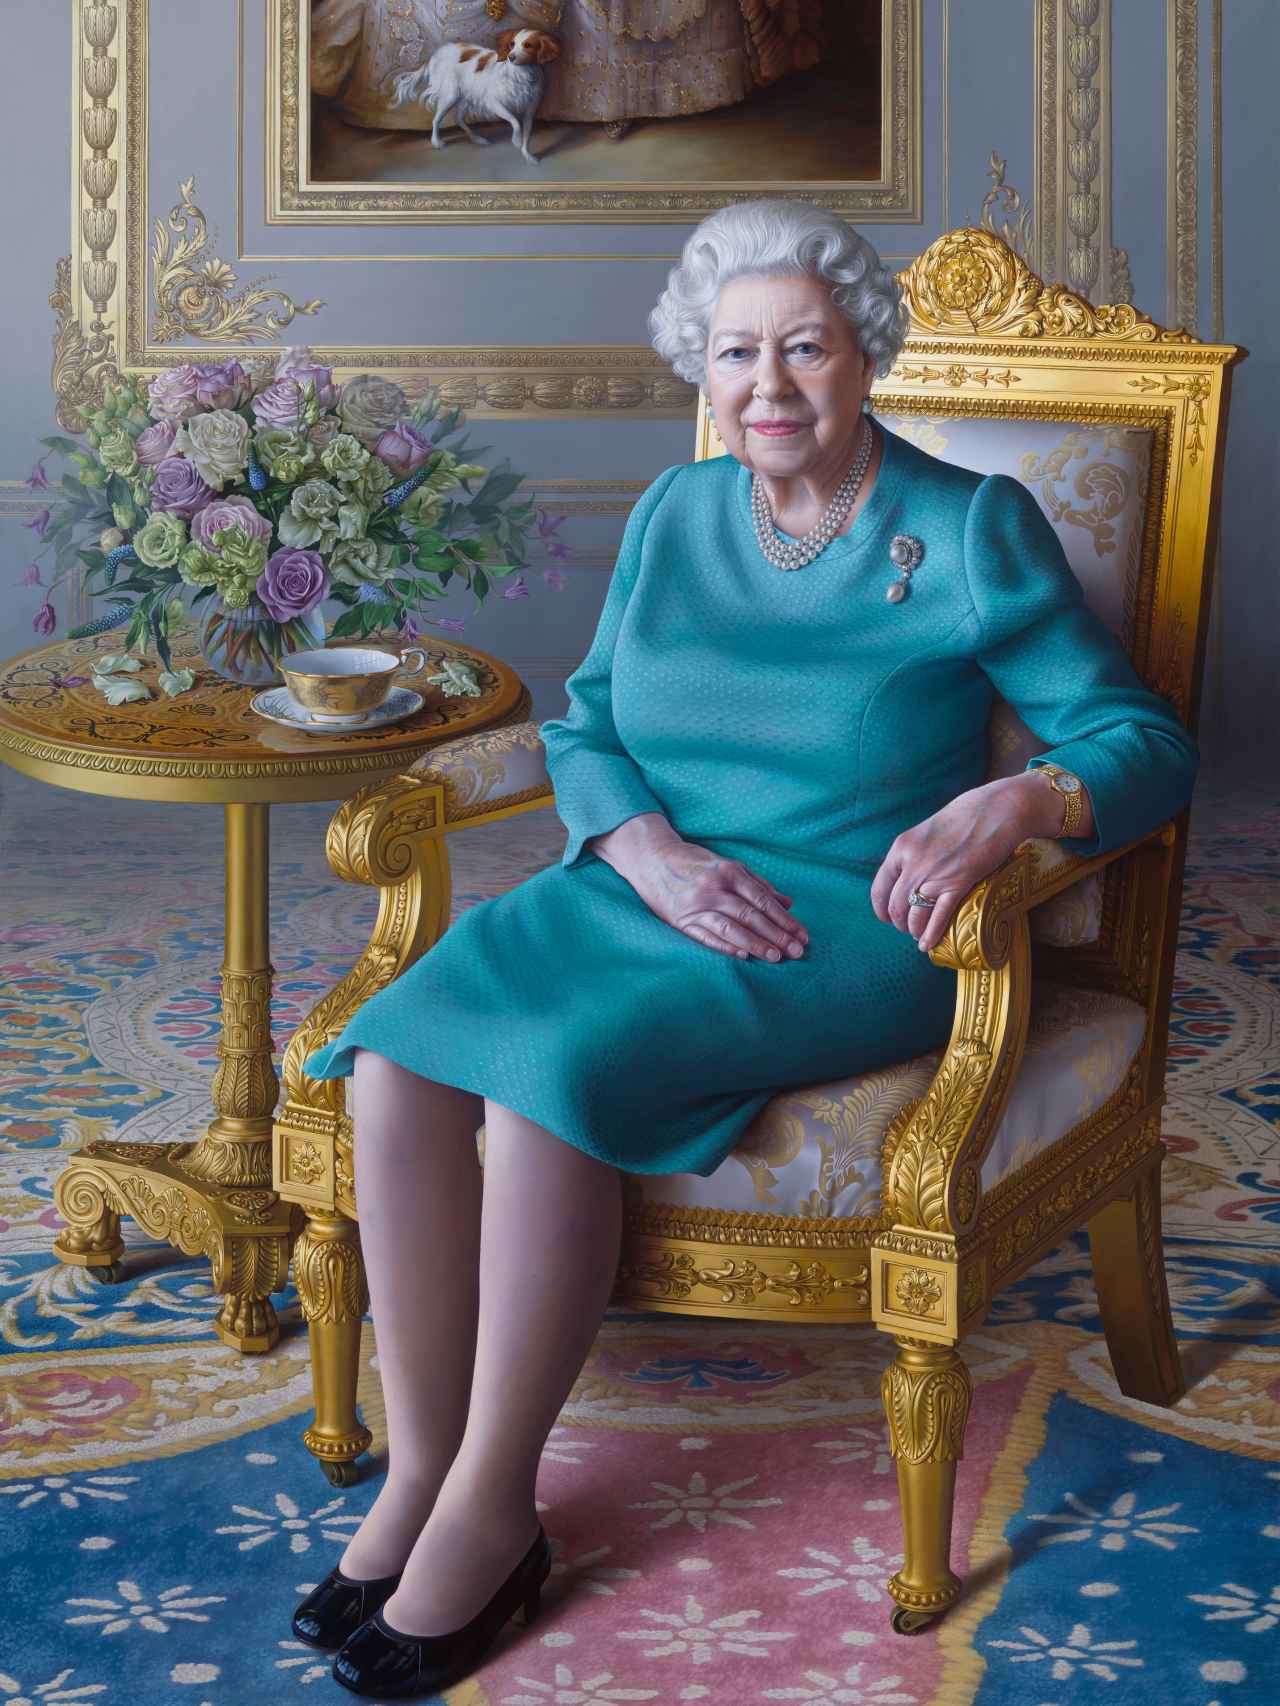 El retrato de la reina de Inglaterra fue un encargo de la Oficina de Asuntos Exteriores y de la Commonwealth.